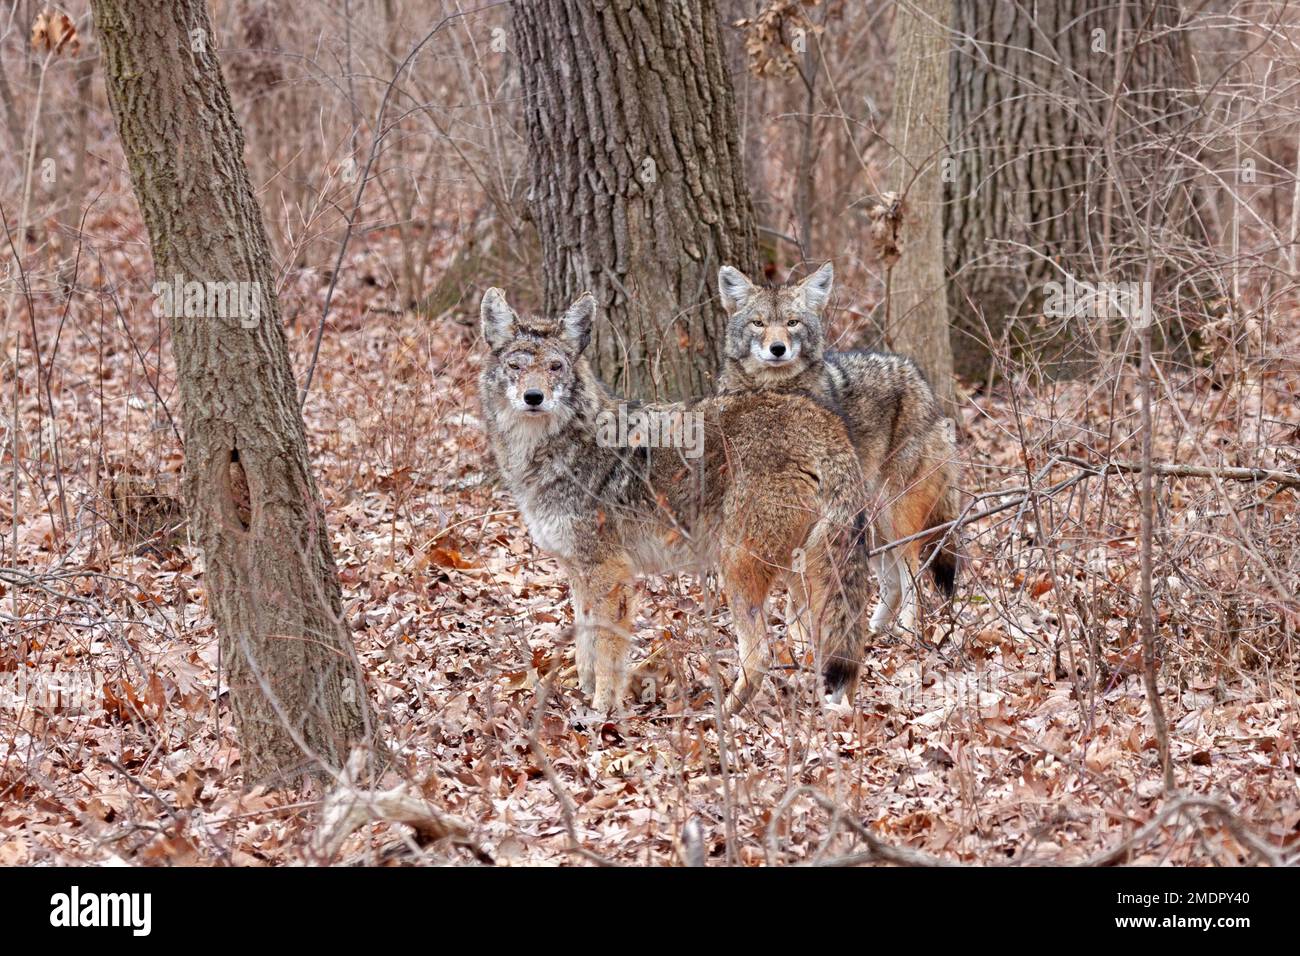 Deux coyotes se tiennent à l'attention, se mélangeant presque aux couleurs d'automne de la forêt. Les deux coyotes regardent la caméra. Arrière-plan de l'orange en décomposition Banque D'Images